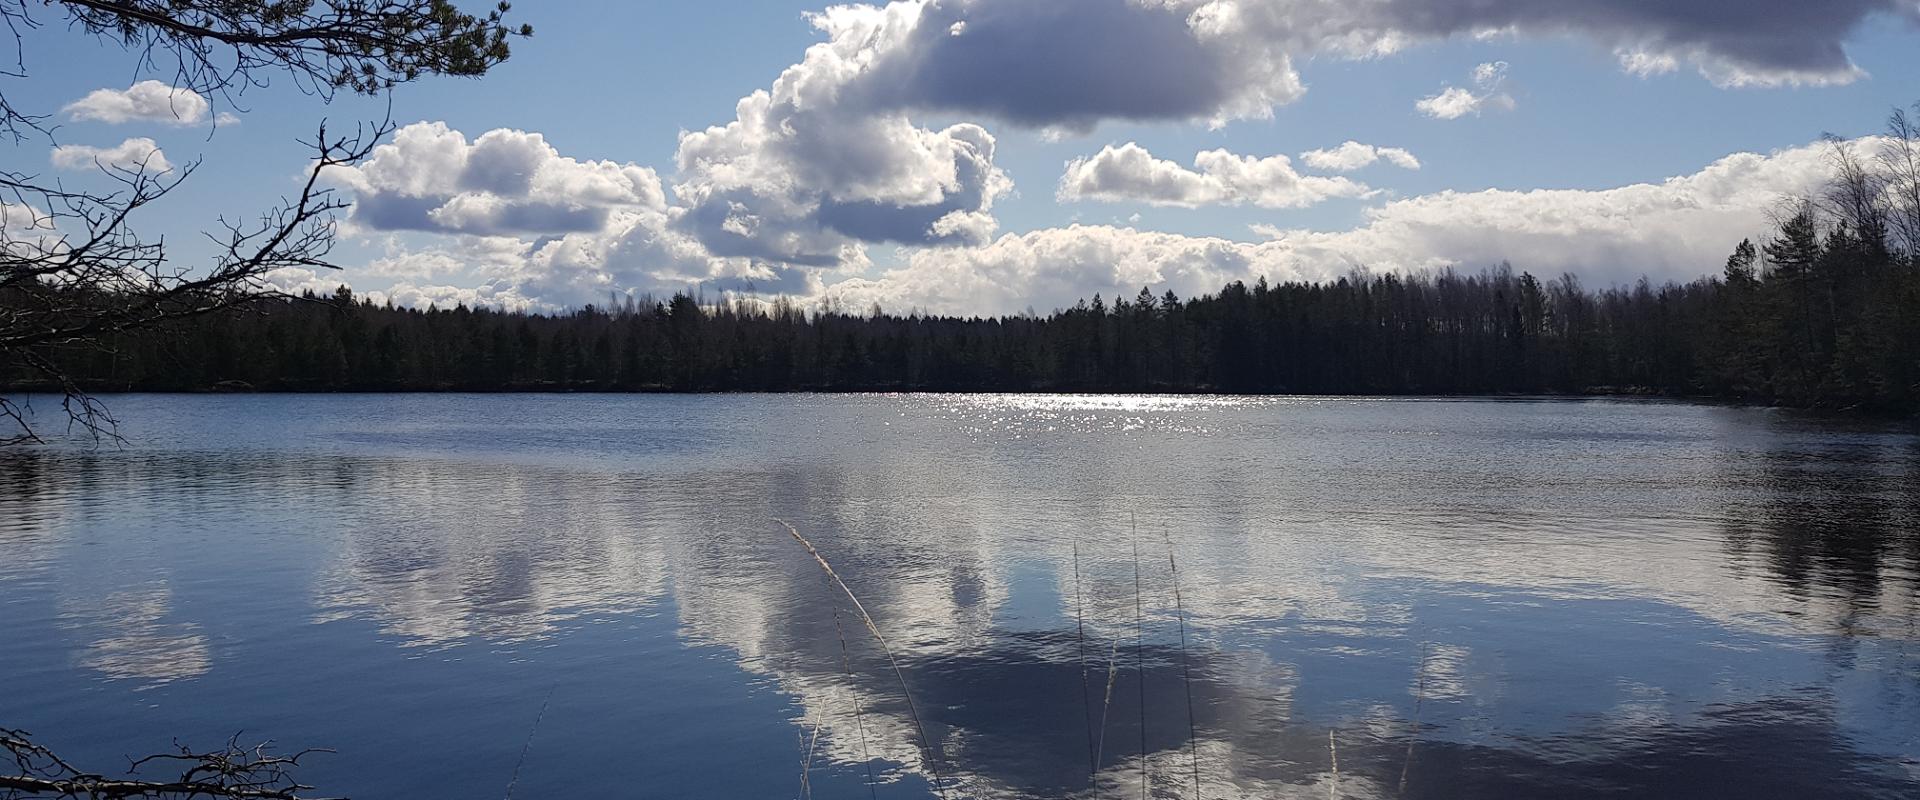 In der Gemeinde Alutaguse befindet sich die Seengruppe Kurtna, das seenreichste Gebiet in Estland, wo ungefähr auf einem 30 m² großen Territorium sich